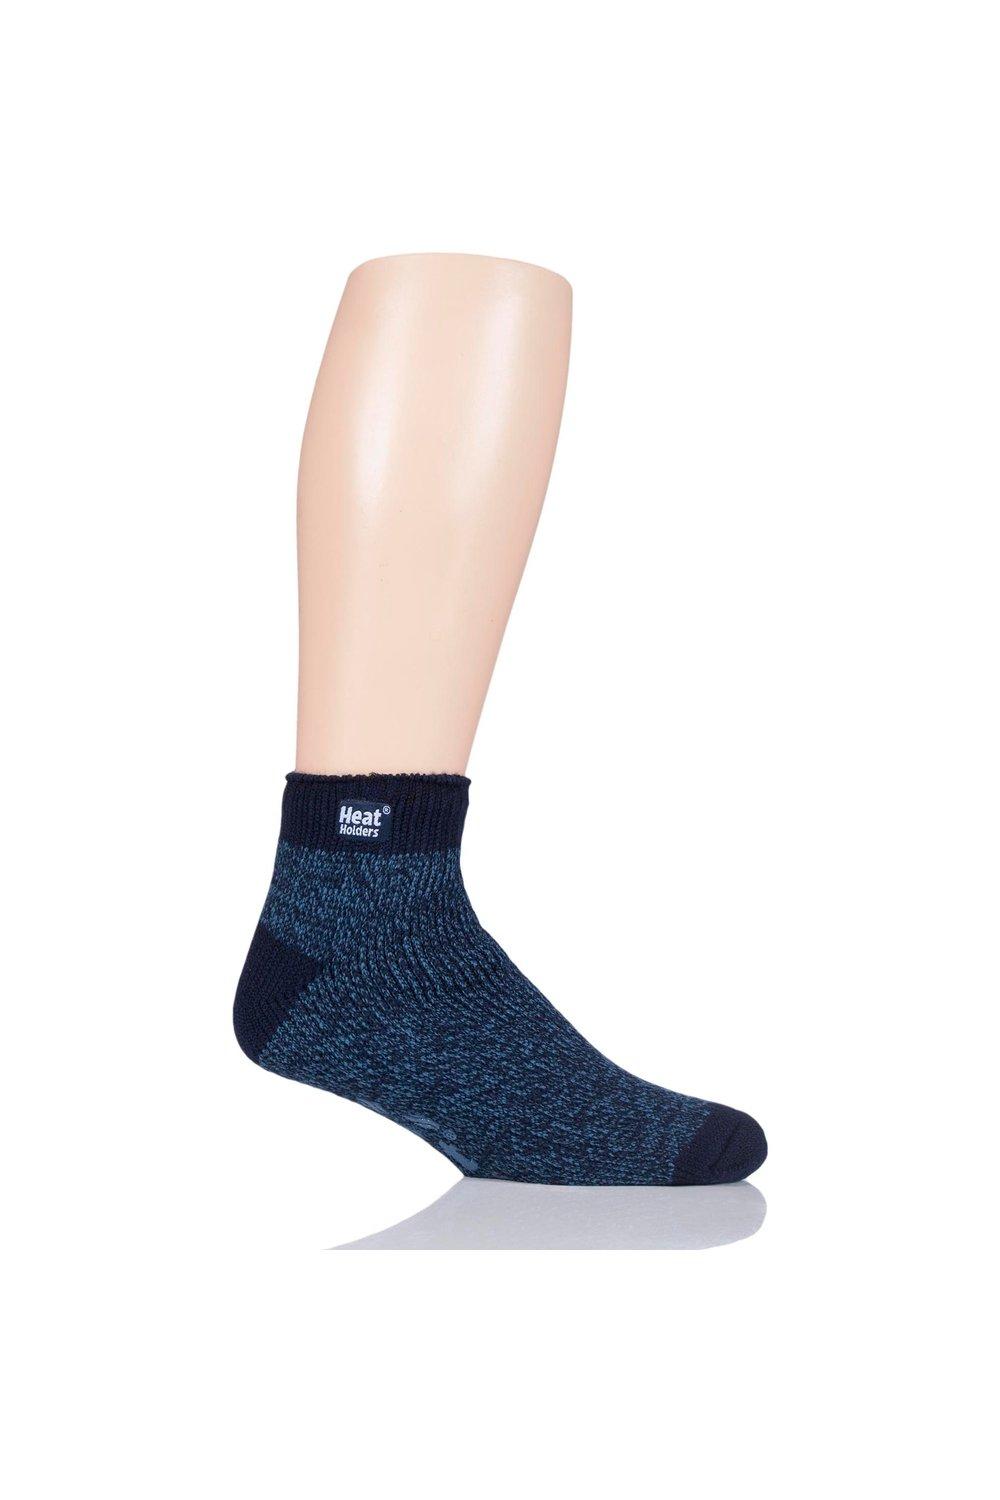 1 Pair Slipper Thermal Ankle Slipper Socks